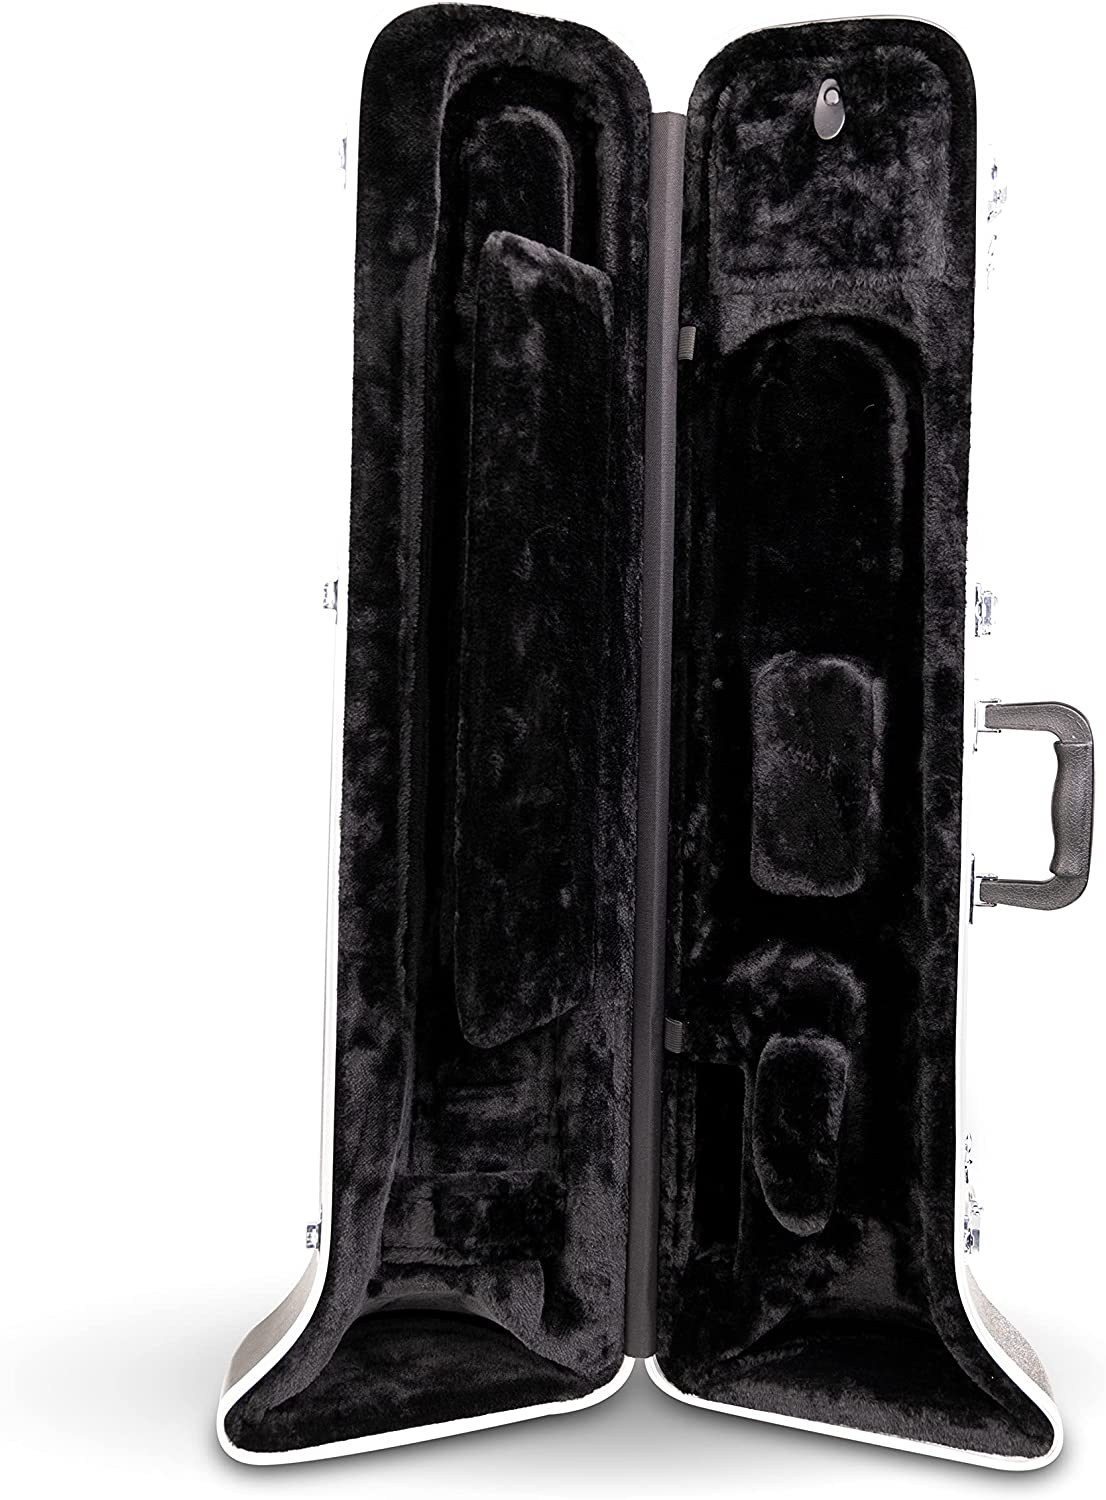 Gator Cases Andante Series Molded ABS Hardshell Case for Tenor Trombone